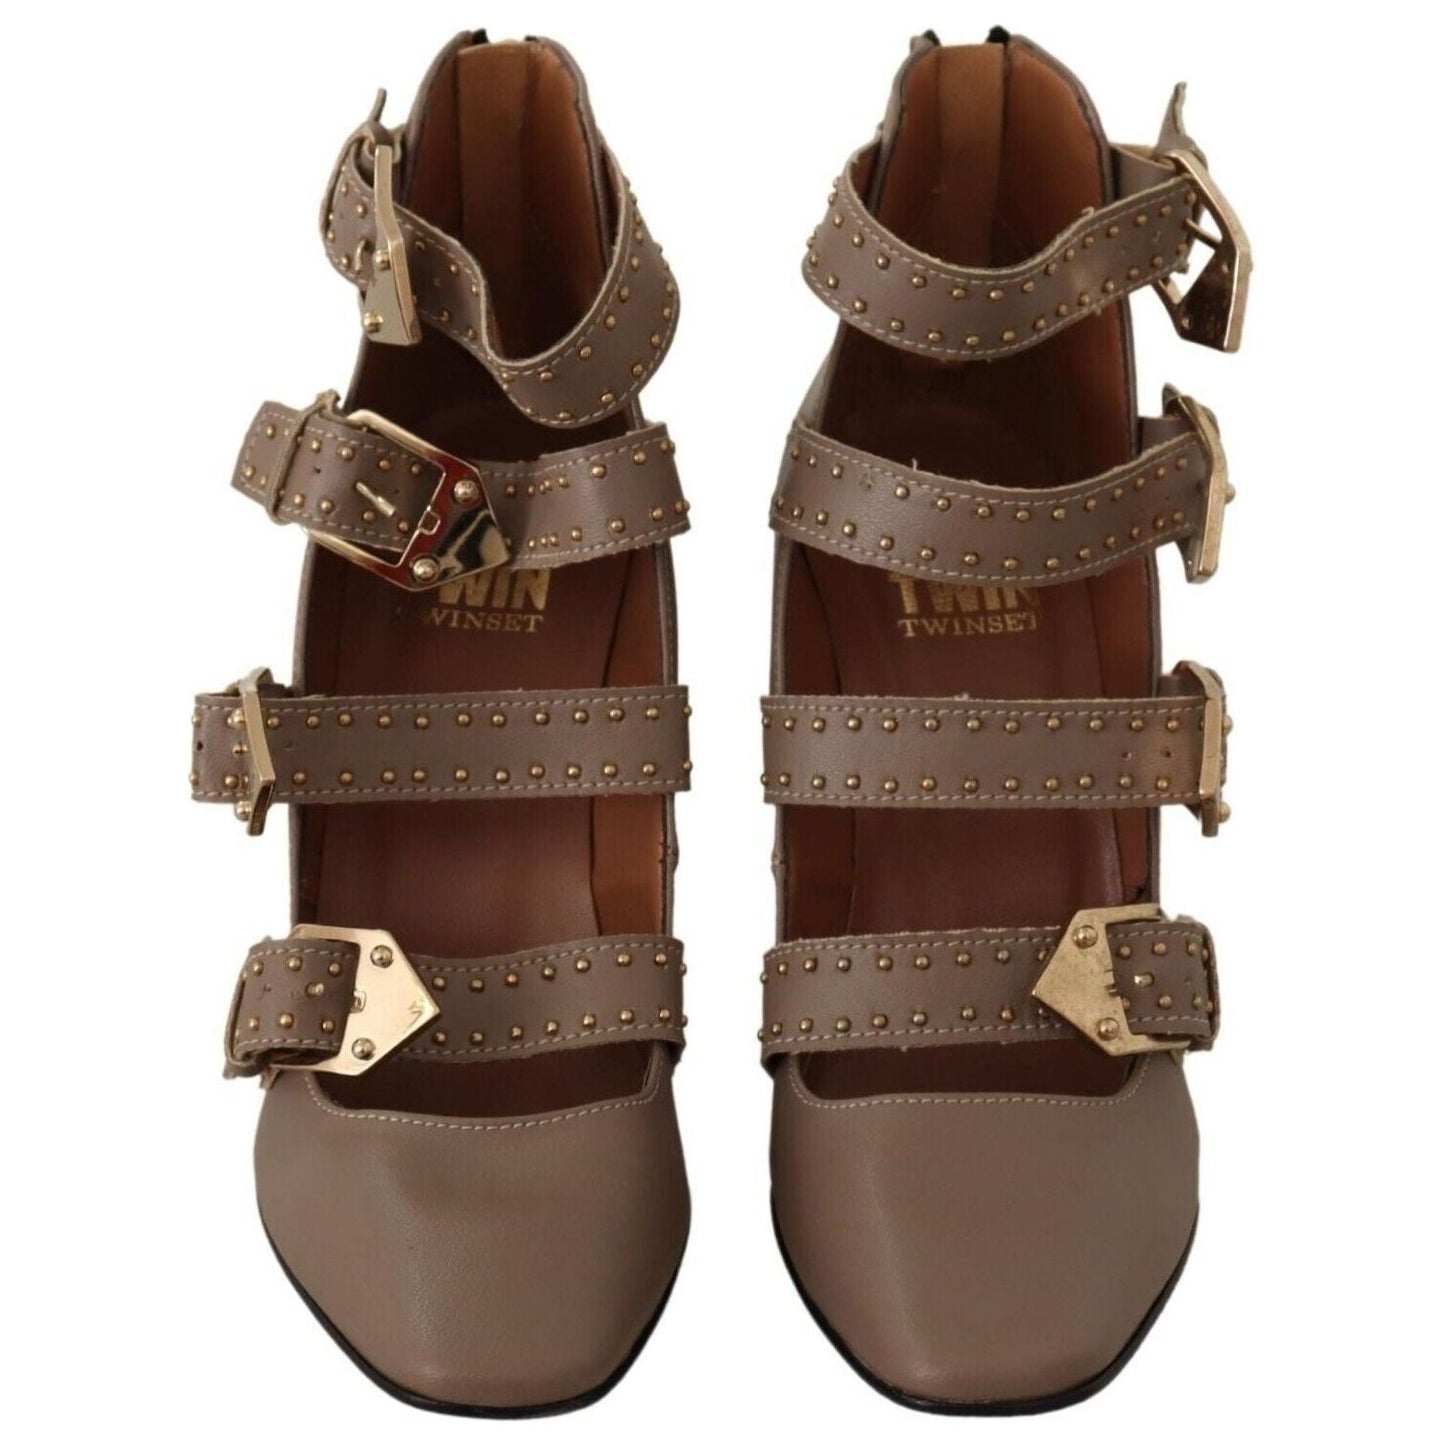 MY TWIN Elegant Leather Multi-Buckle Heels in Brown WOMAN PUMPS brown-leather-block-heels-multi-buckle-pumps-shoes